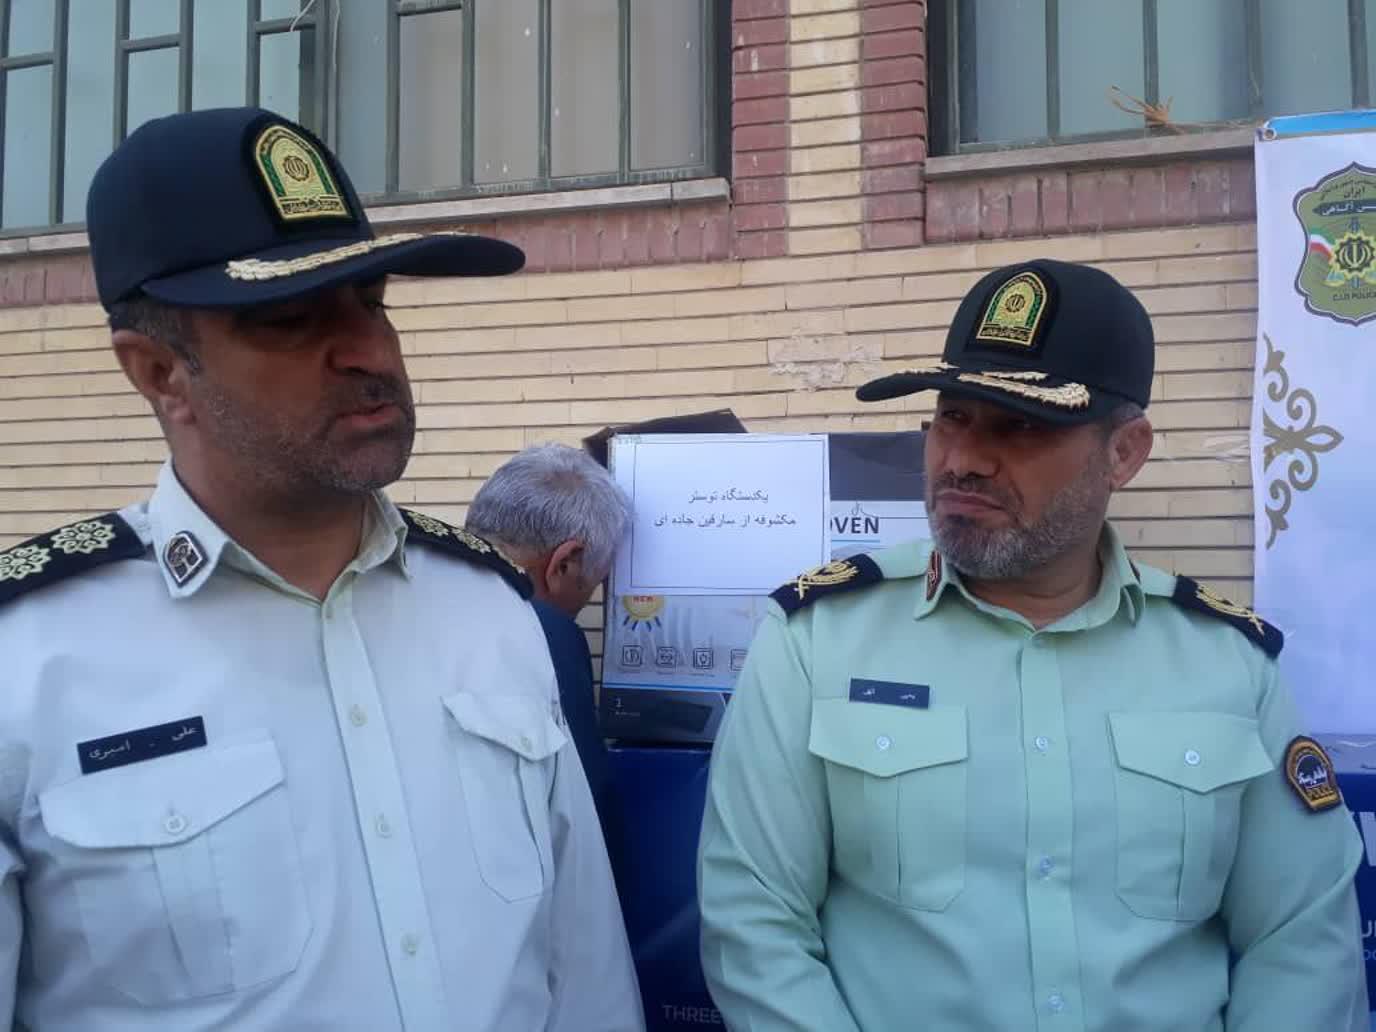 فیلم +مصاحبه سردار یحیی الهی فرمانده انتظامی لرستان در خصوص دستگیری و کشف دو باند سرقت به عنف و سلاح و مهمات در لرستان